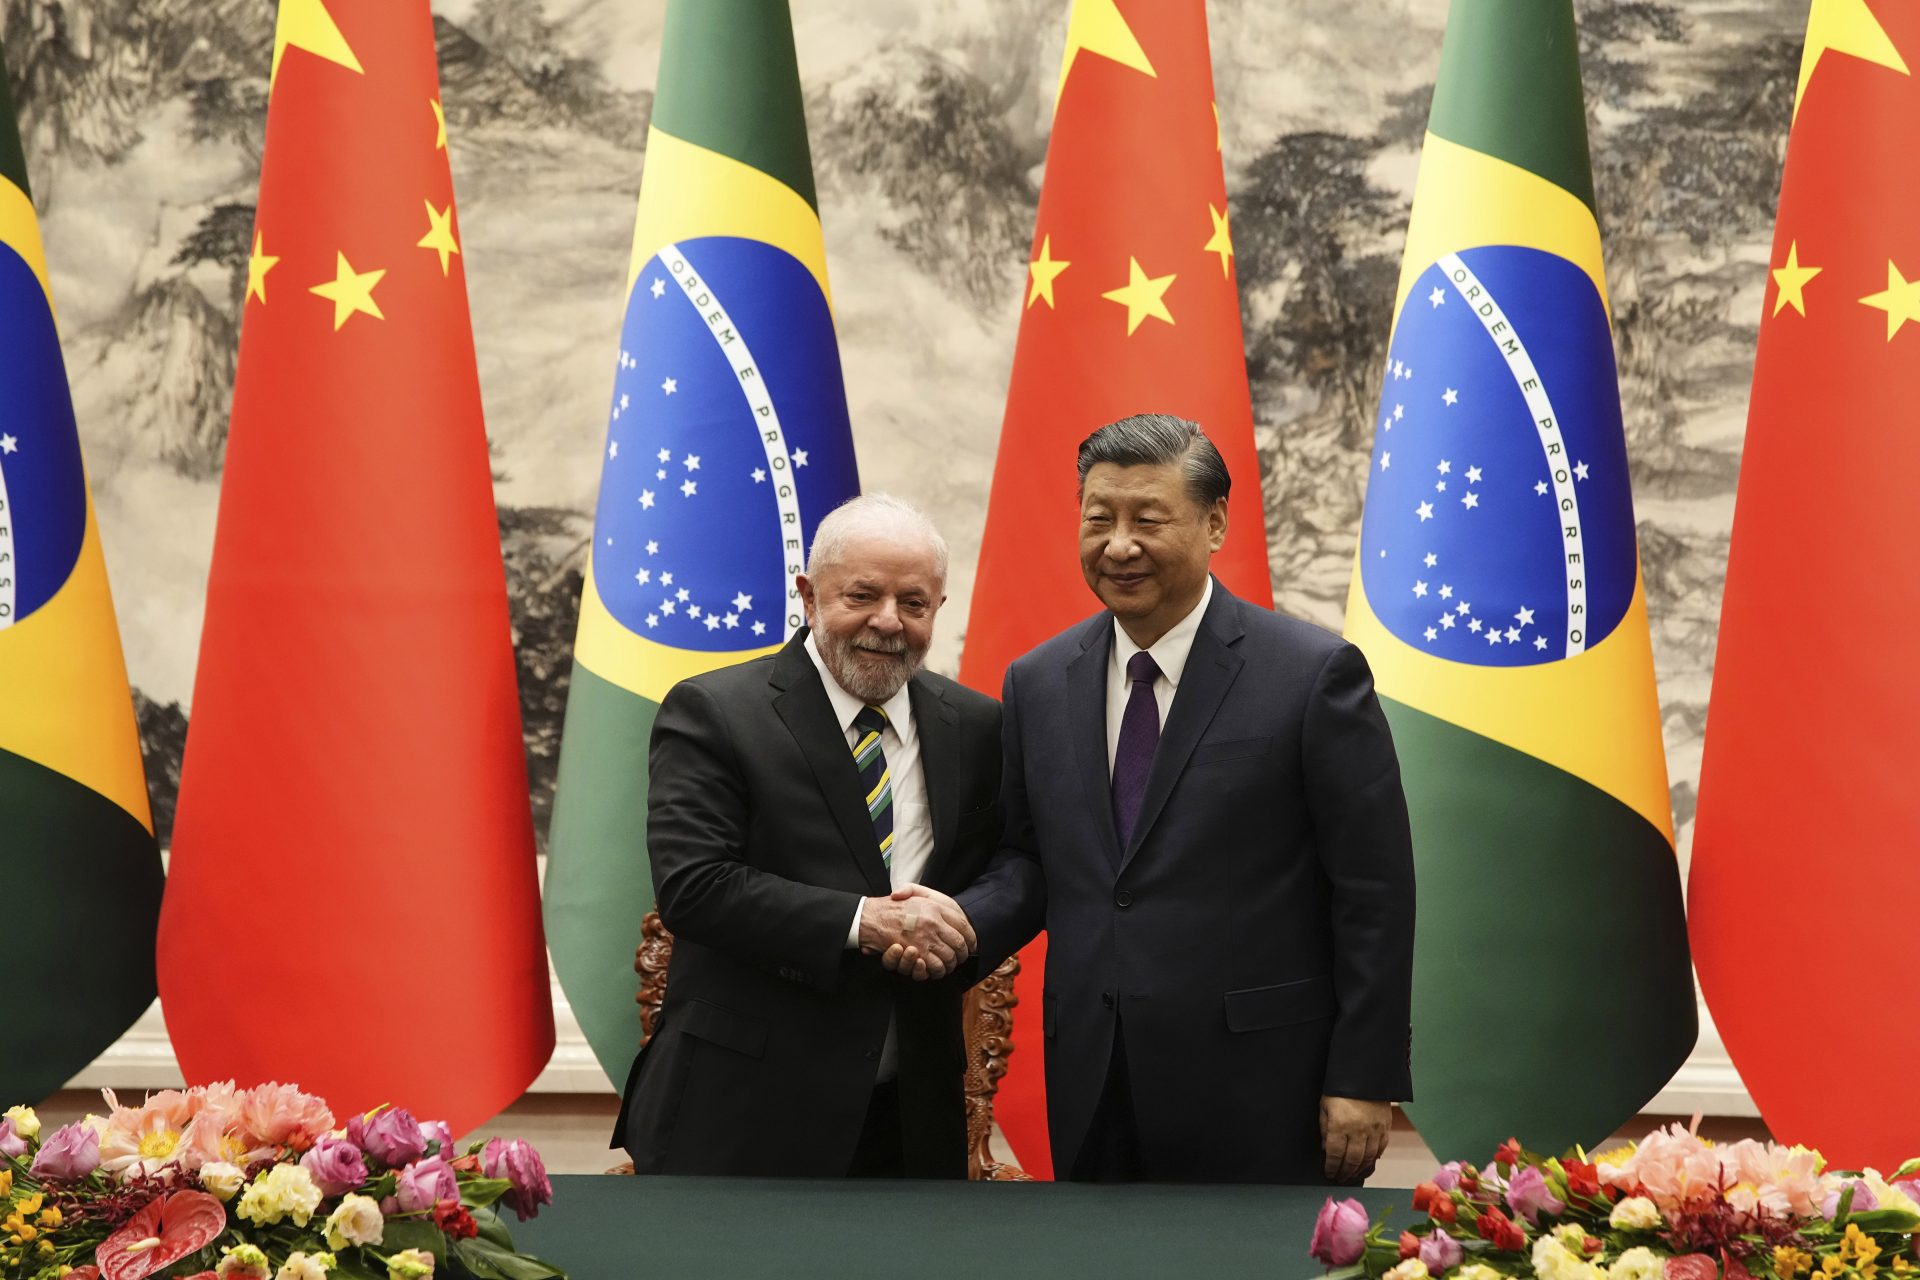 O presidente chinês Xi Jinping e o presidente brasileiro Luiz Inácio Lula da Silva se cumprimentam após a cerimônia de assinatura no Grande Salão do Povo, em Pequim, na China, nesta sexta-feira (14) - Foto: Ken Ishi/ Associated Press/ Estadão Conteúdo